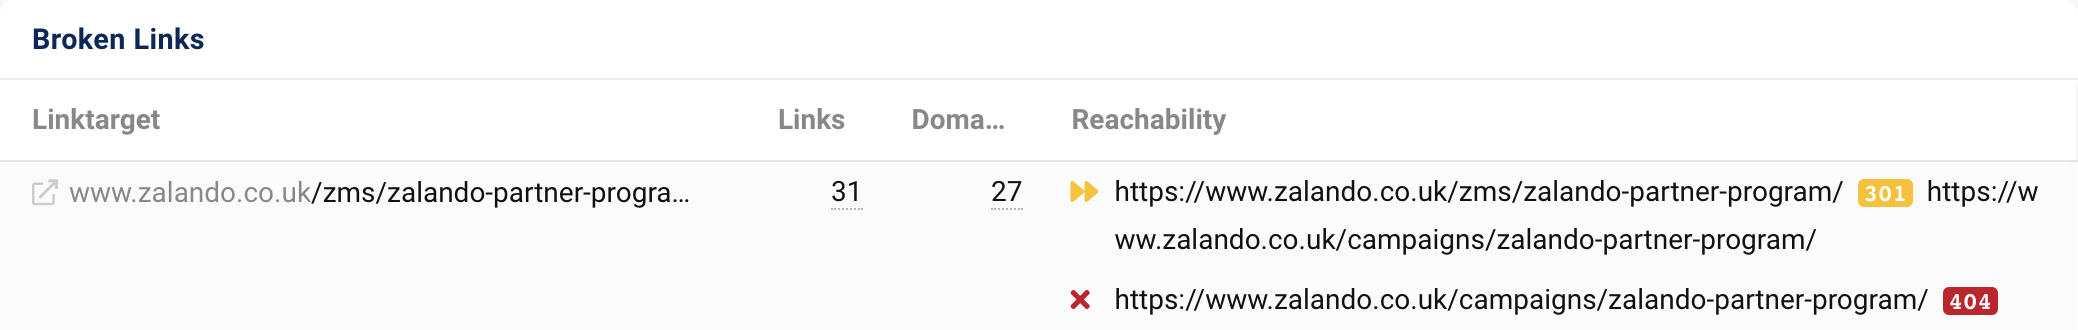 链接目标 zalando.co.uk/zms/zalando-partner-program/ 从 27 个域获取 31 个链接。 301 重定向后，URL 输出 404 状态代码。